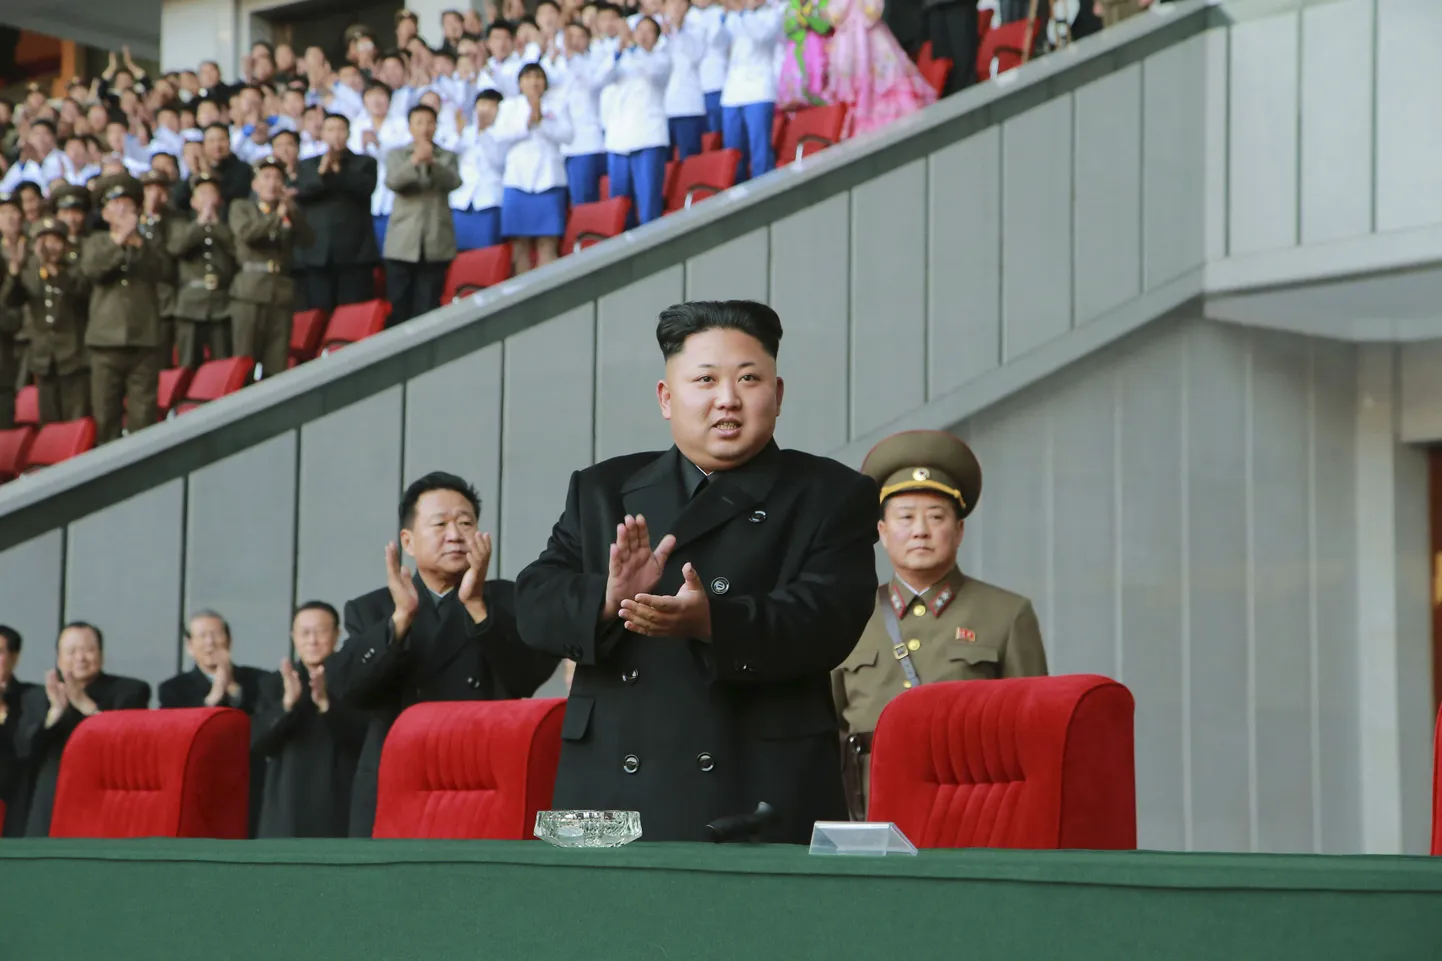 Põhja-Korea liider Kim Jong-un naiste jalgpalli võistlust vaatamas.